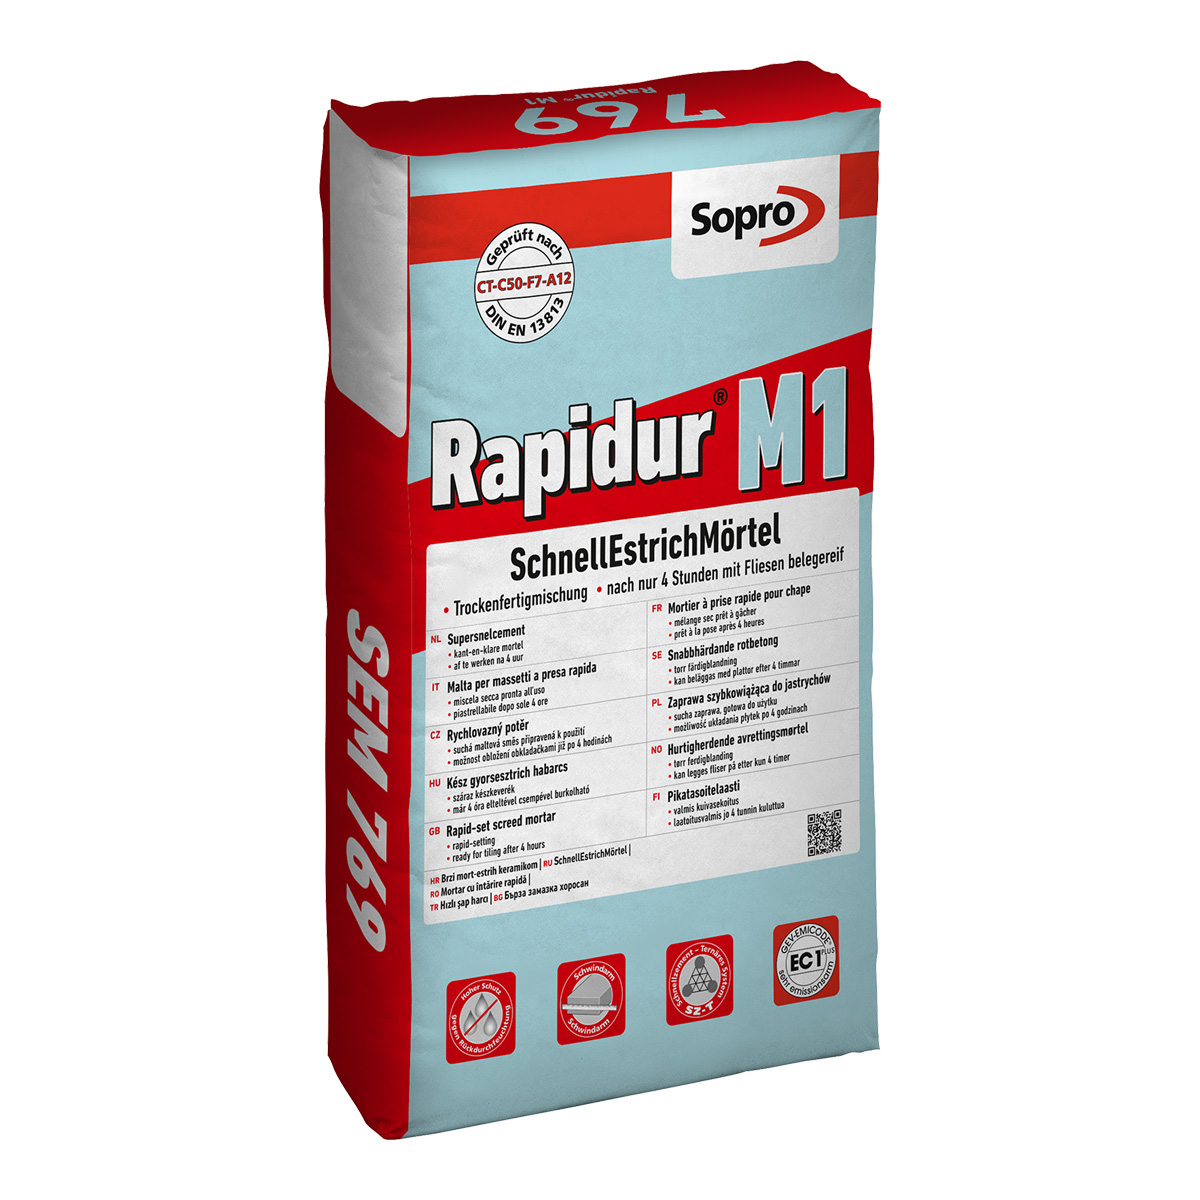 Sopro Rapidur® M1 SchnellEstrichMörtel Nr. 769